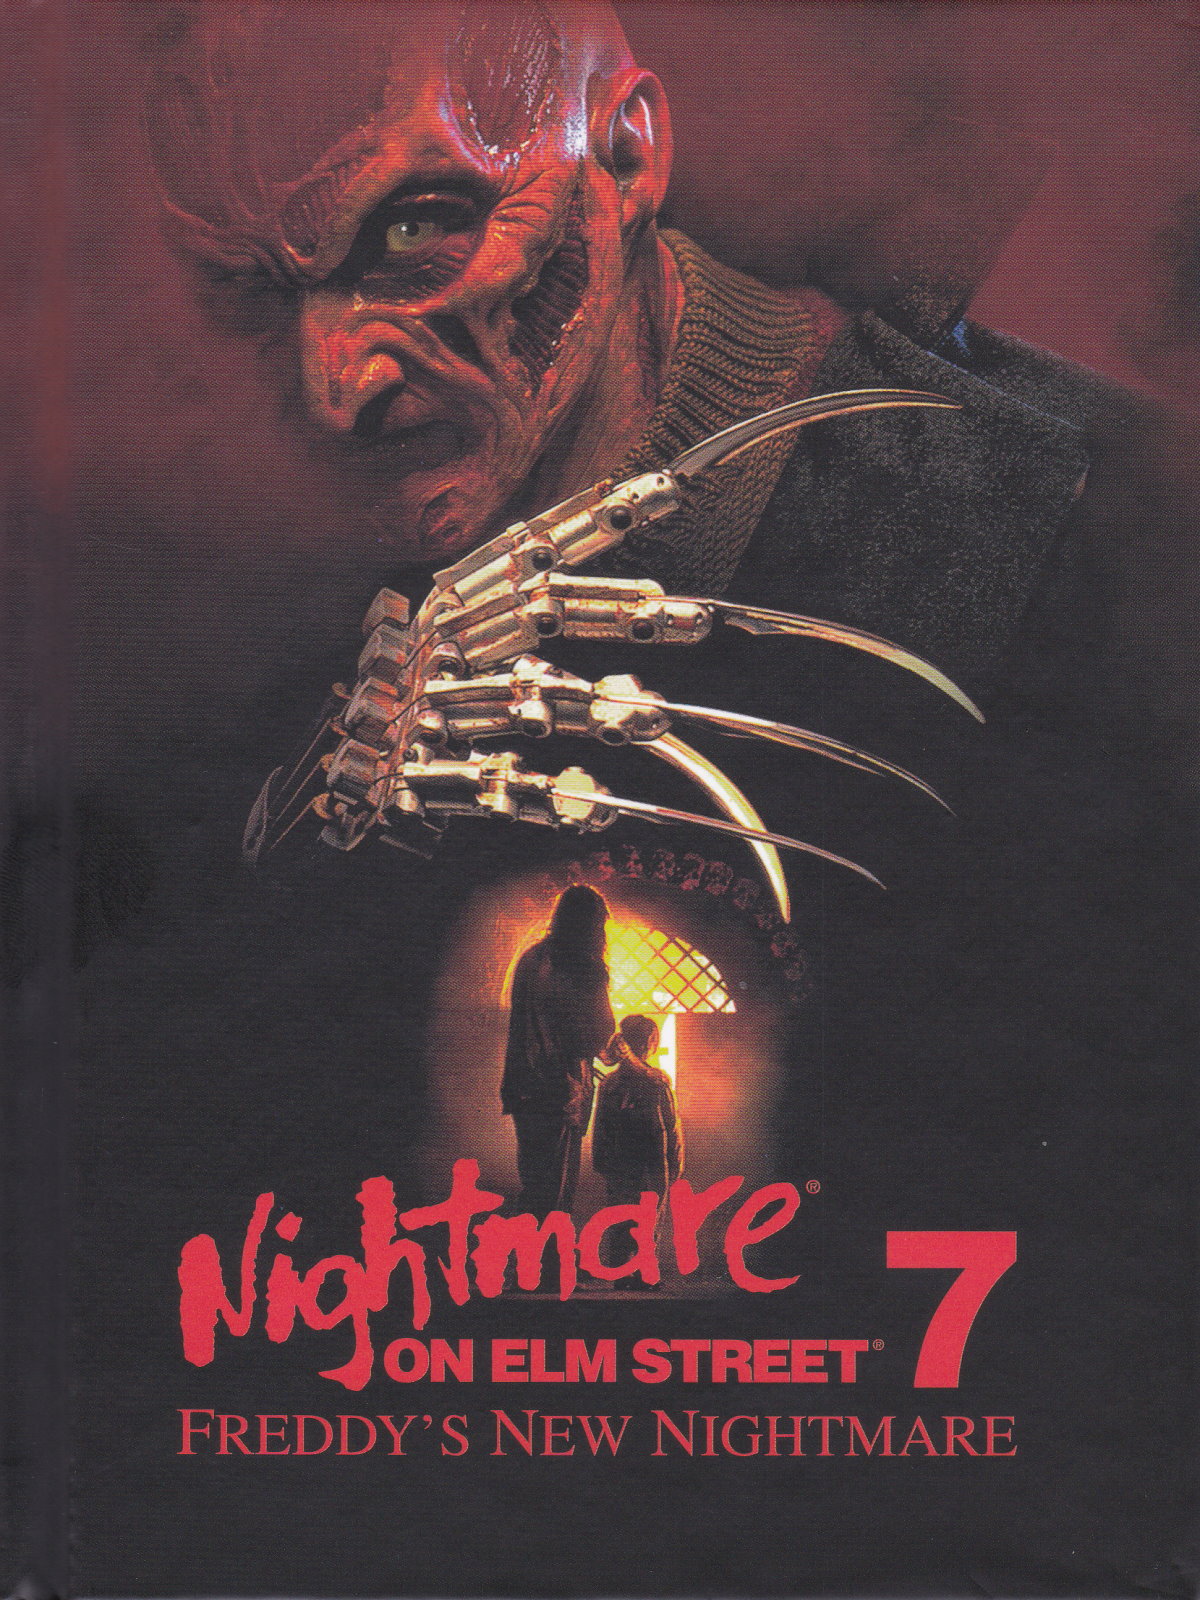 Cover - Nightmare on Elm Street 7 - Freddy's New Nightmare.jpg